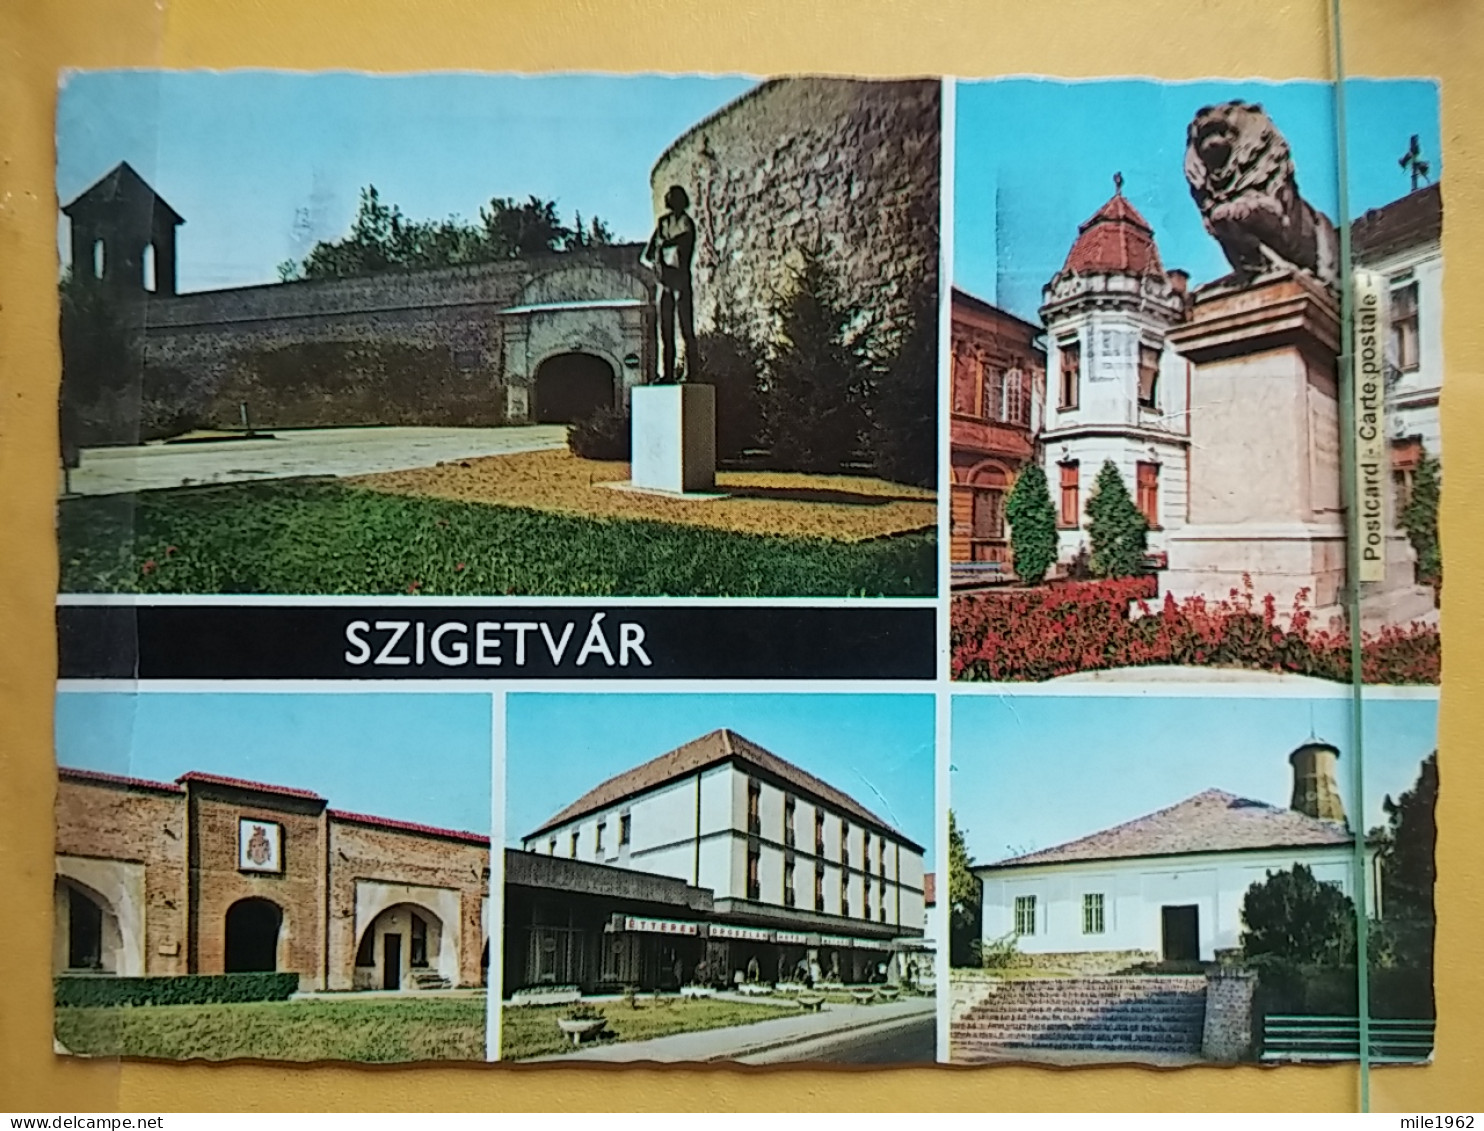 Kov 716-32 - HUNGARY, SZIGETVAR - Hungary